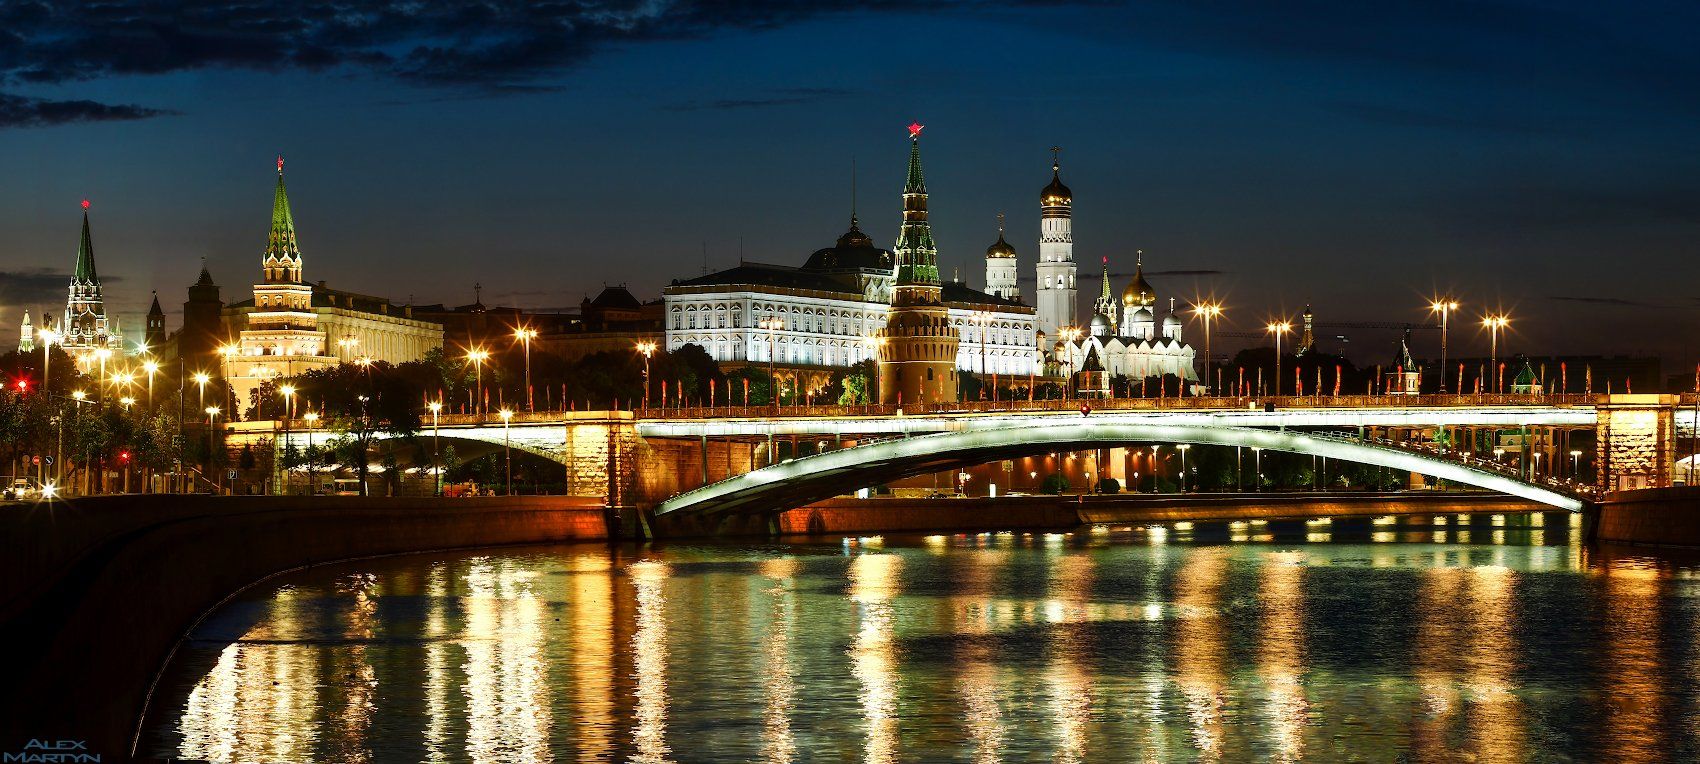 кремль, ночь, москва-река, набережная, город, Александр Мартынов